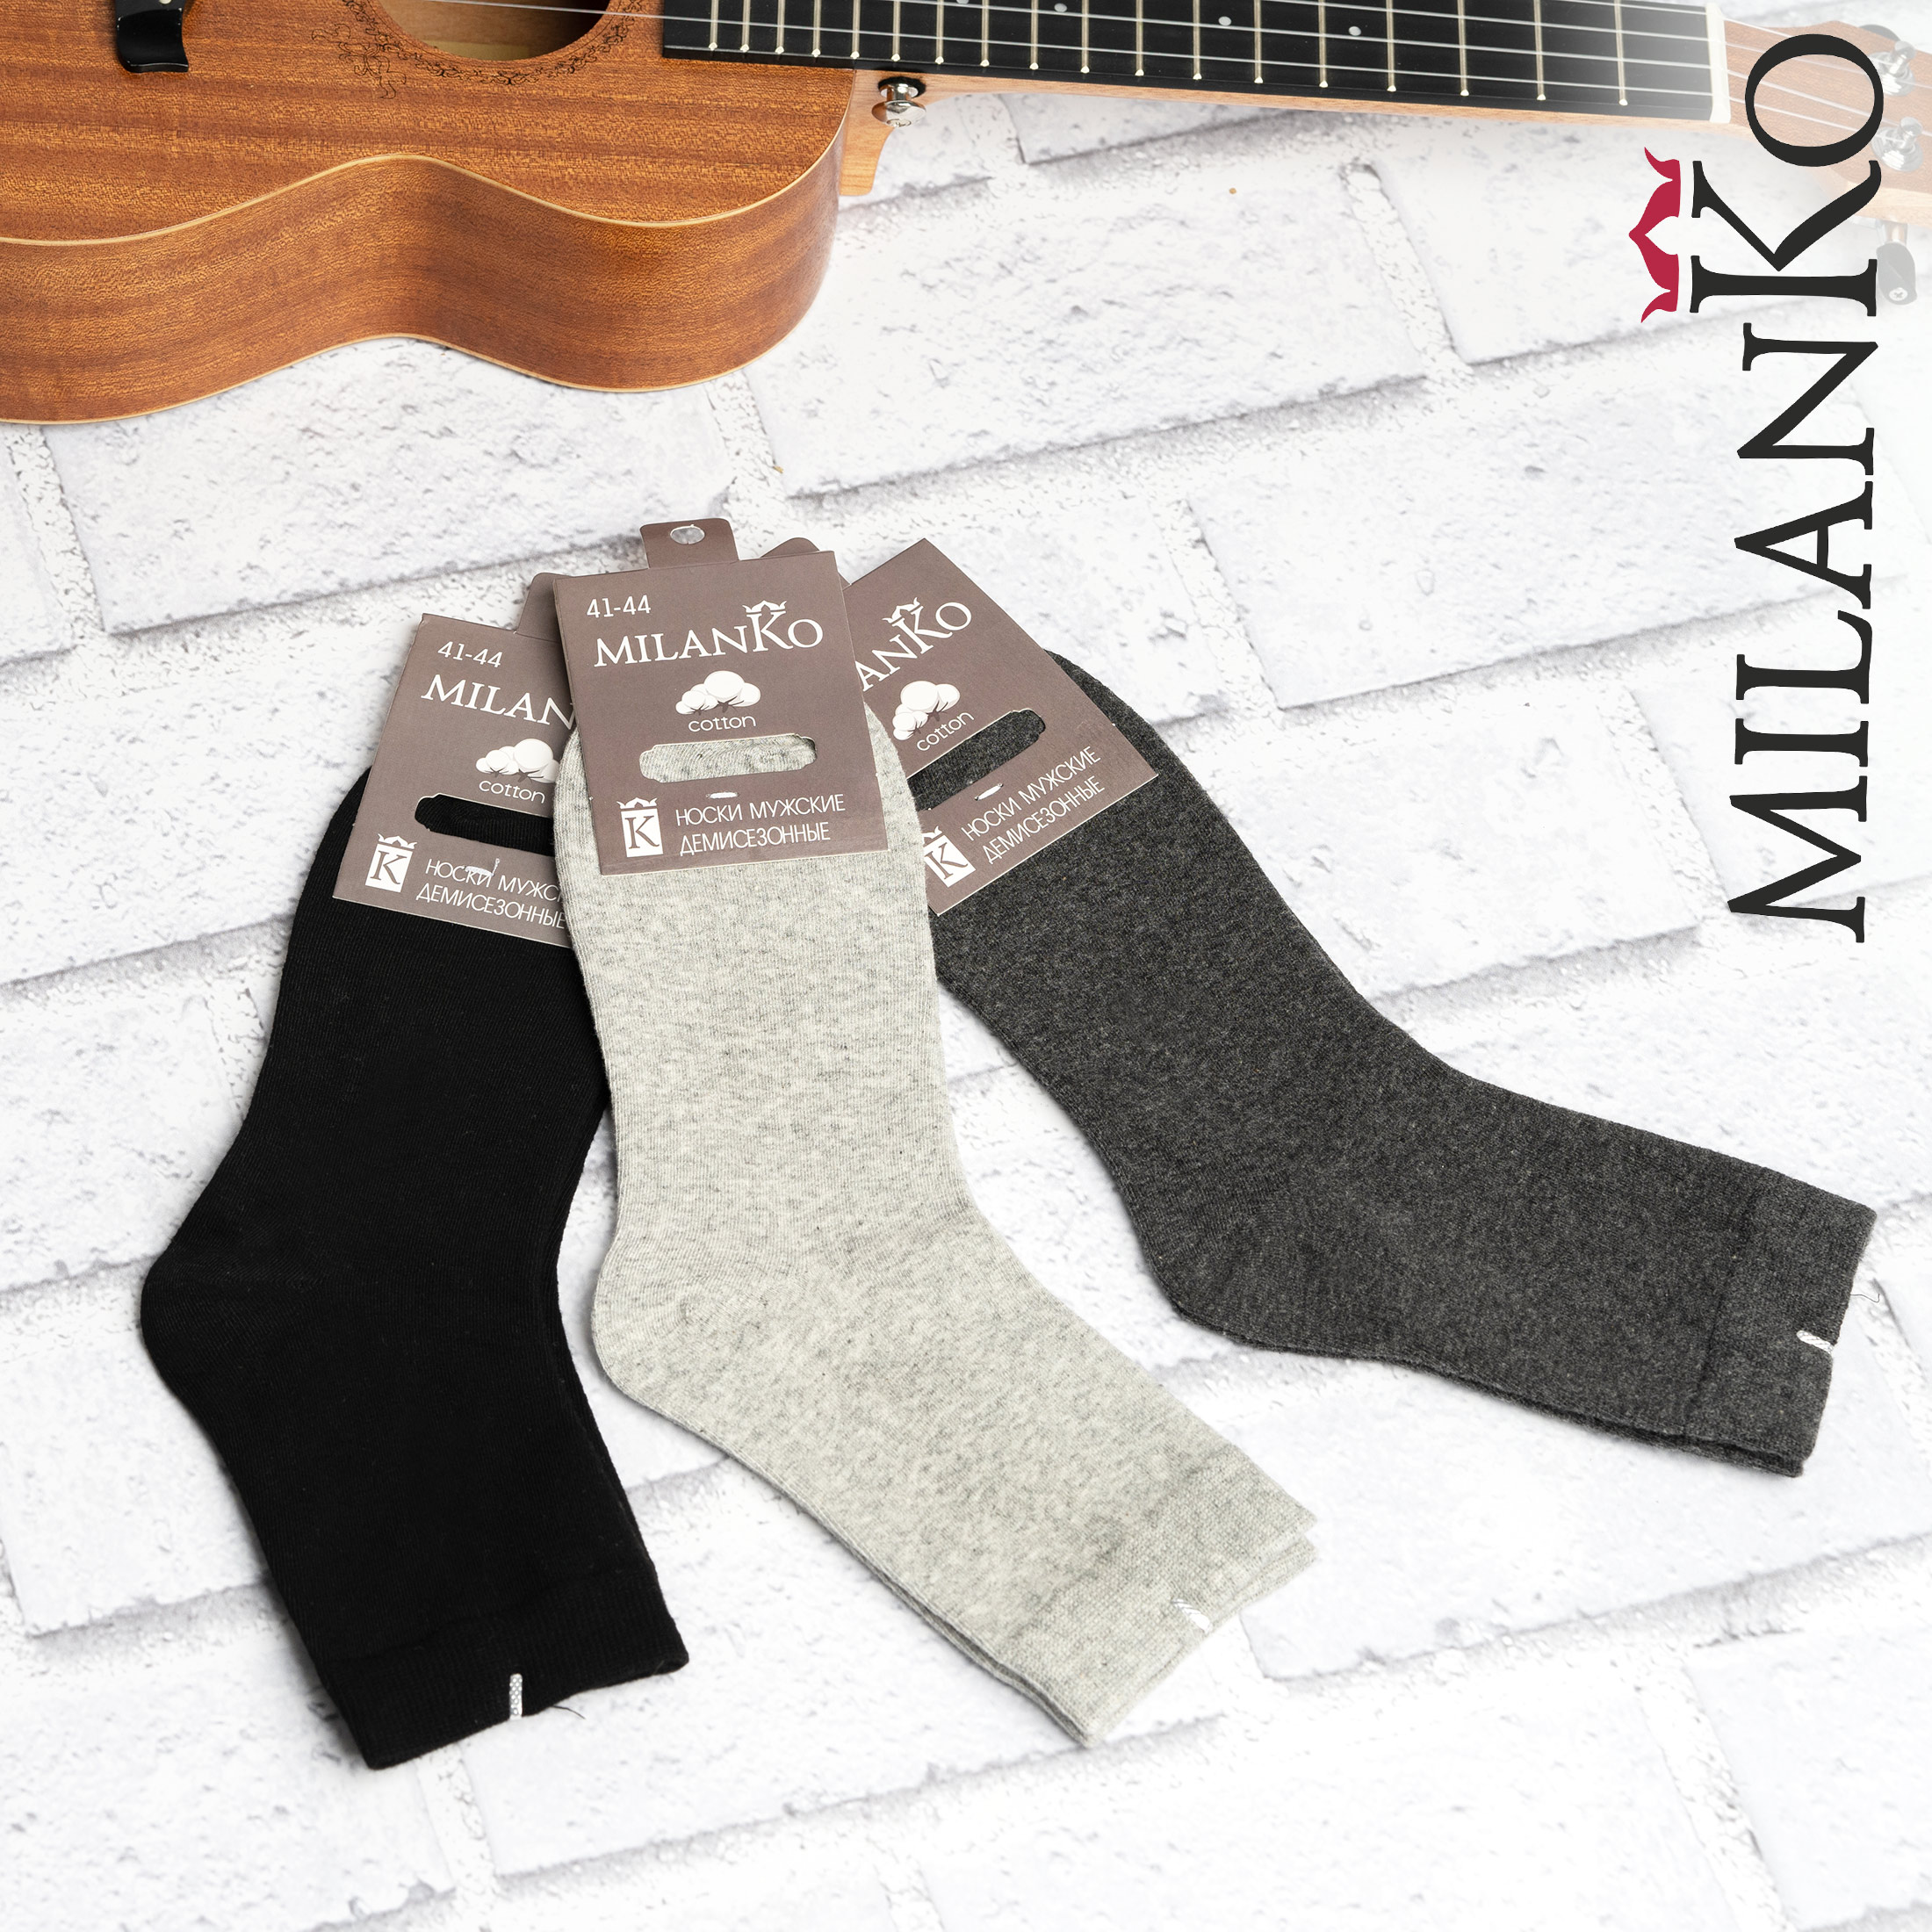 MILANKO   ,Мужские носки демисезонные MilanKo N-188